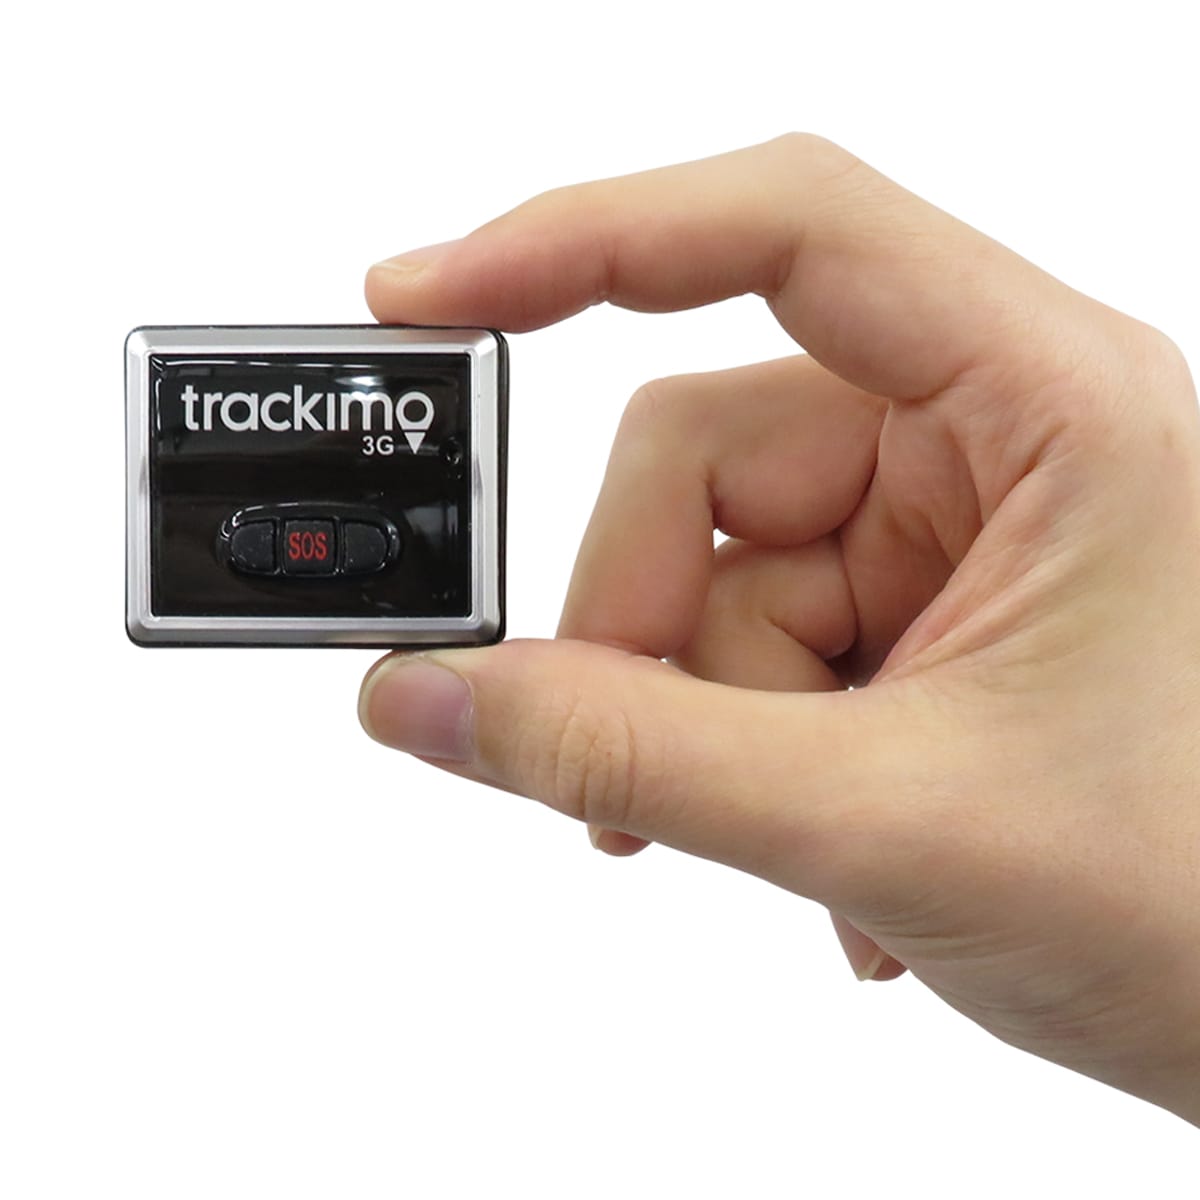 海外でも使えるW-CDMA/GSM対応GPSトラッカー「Trackimo」